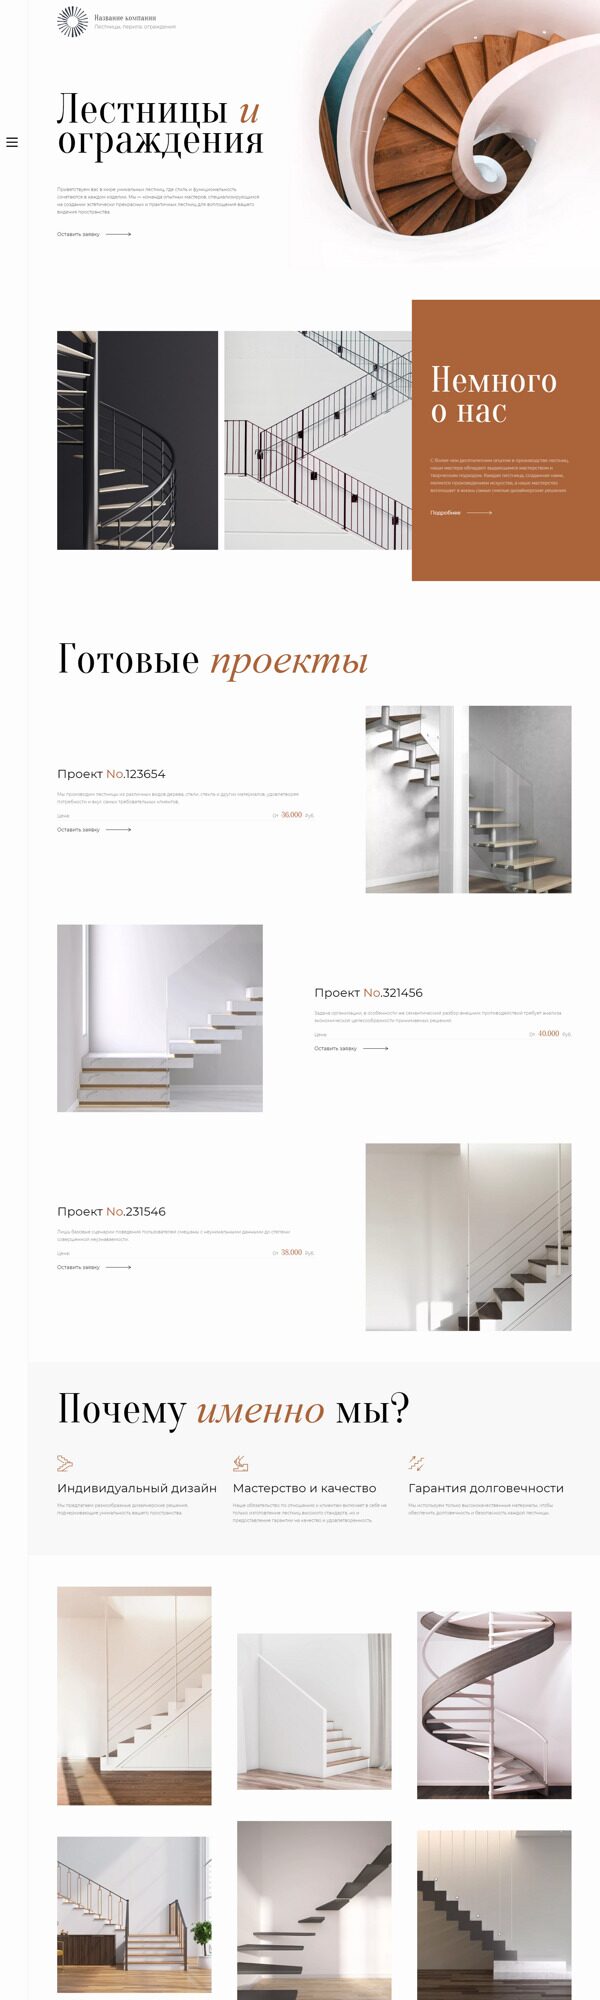 Готовый Сайт-Бизнес № 5620557 - Изготовление лестниц, перил, ограждений (Десктопная версия)